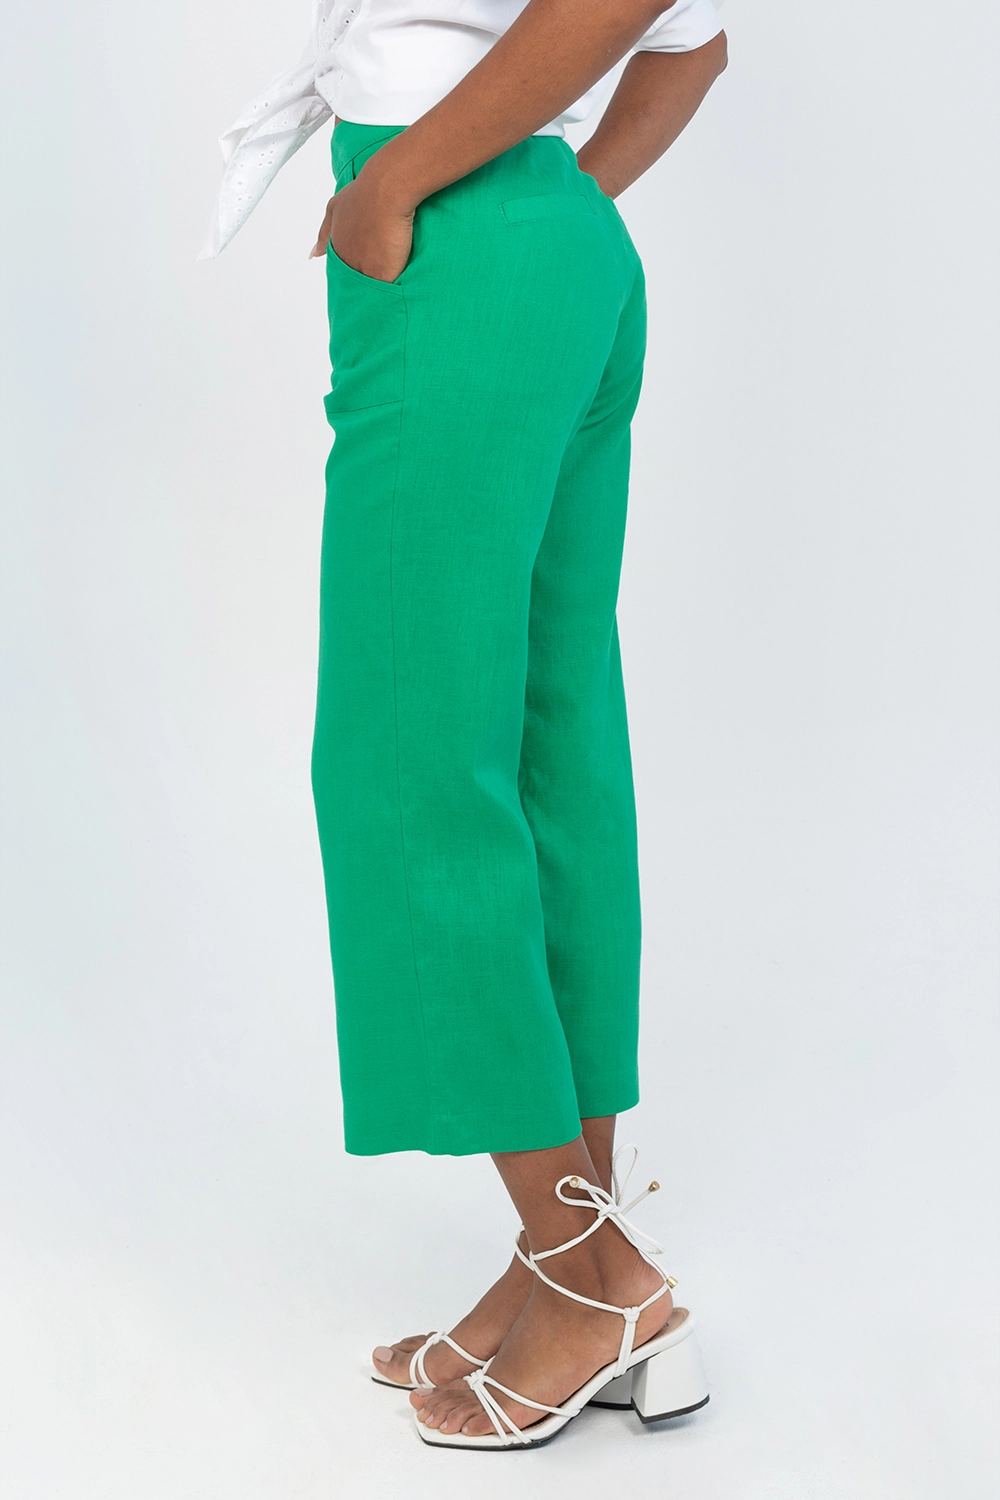 Pantalón culotte en lino con bolsillos parche tiro medio. Verde esmeralda talla 14